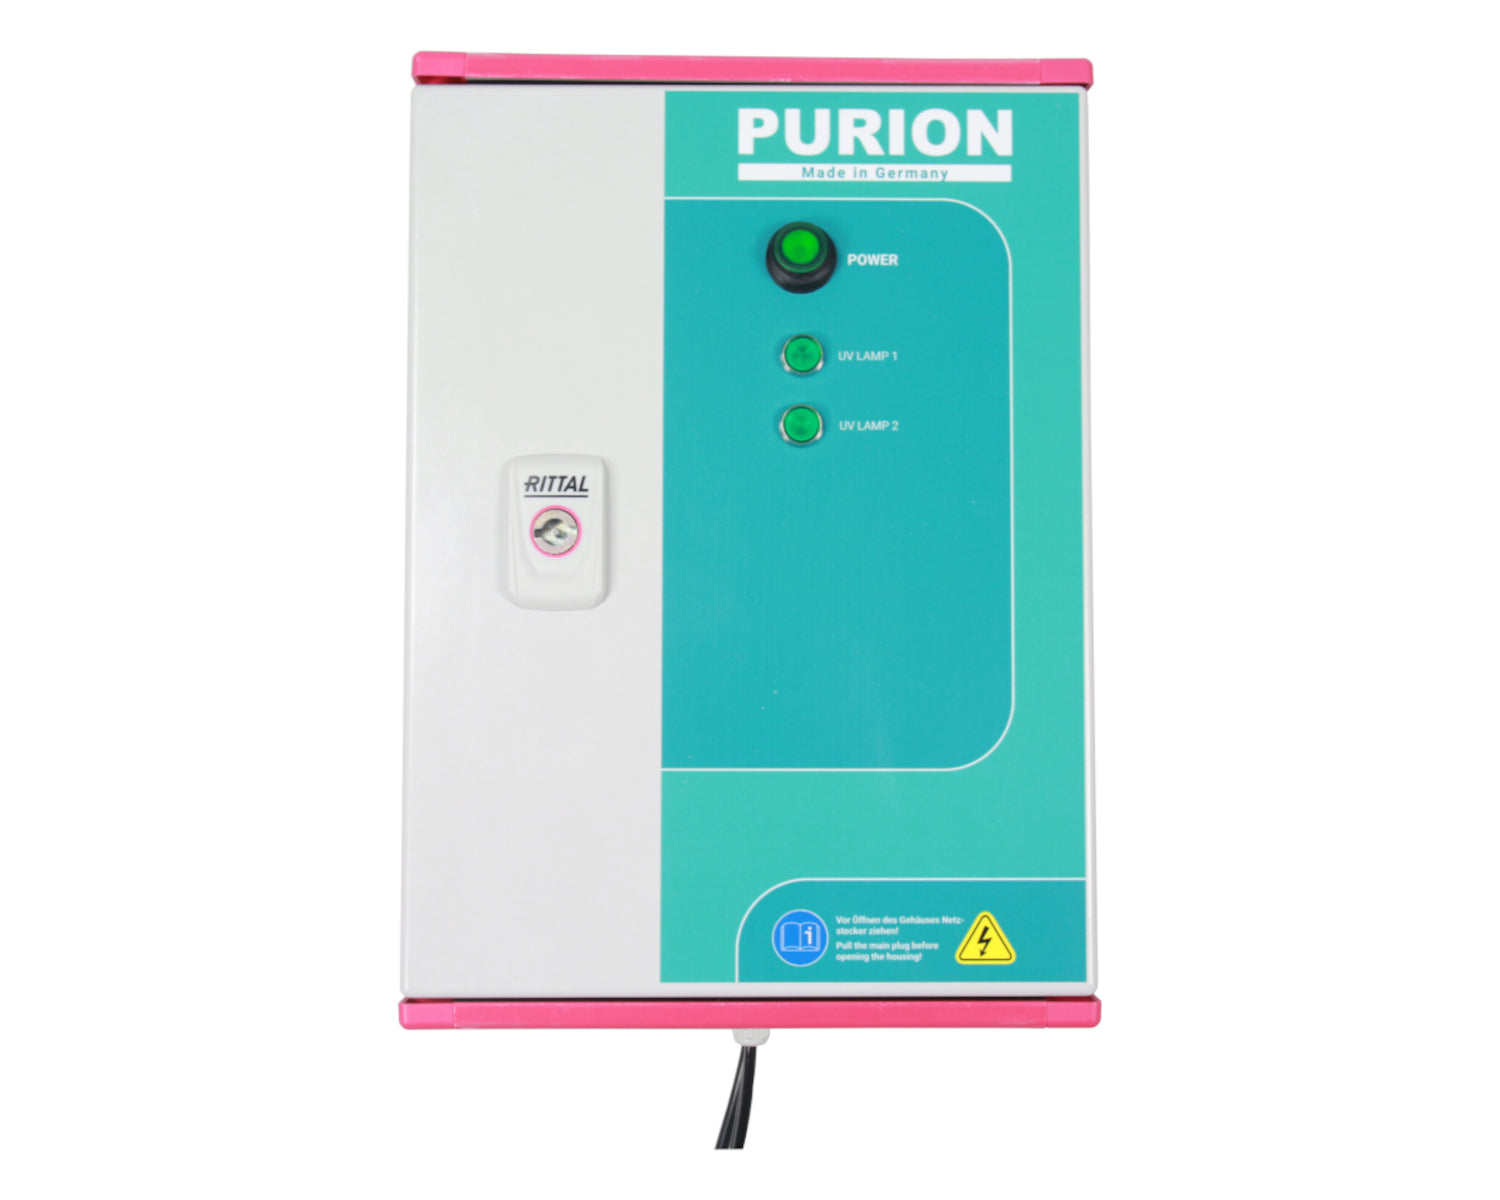 Das PURION 2501 DUAL PVC-U Basic der Purion GmbH ist ein leistungsstarkes und innovatives UV-C-Desinfektionssystem, das sich perfekt zur Aufrechterhaltung der Sauberkeit eines Salzwasserpools eignet. Mit seiner fortschrittlichen Technologie sorgt der PURION 2501 DUAL PVC-U Basic der PURION GmbH für eine effektive Reinigung und Desinfektion.